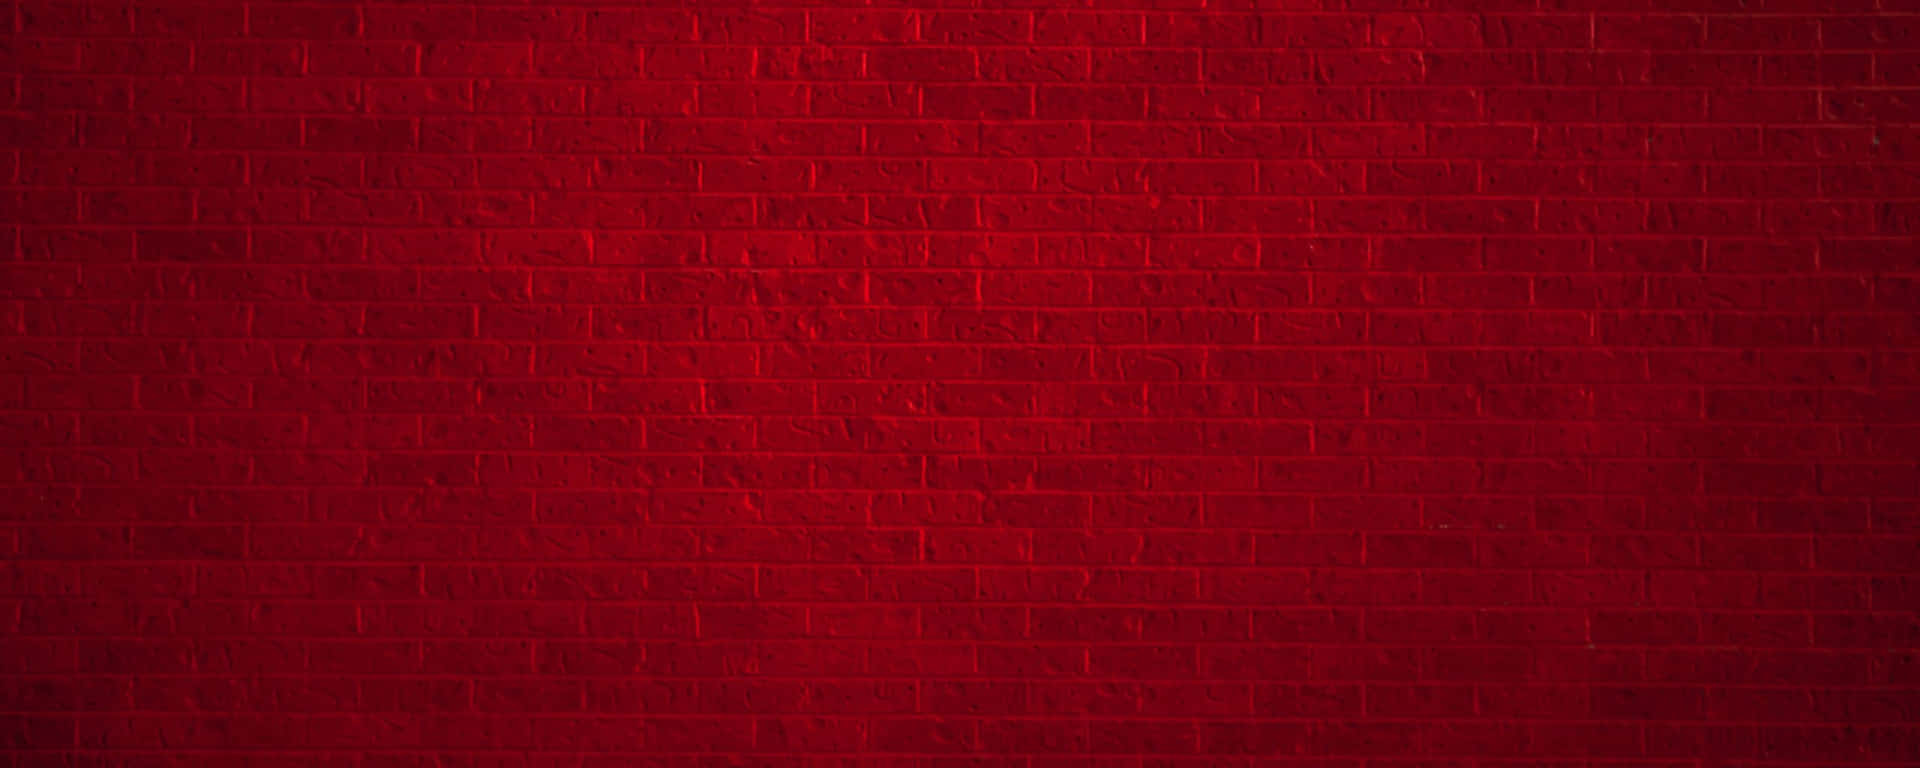 Brick Wall Red Ultra Wide HD Wallpaper